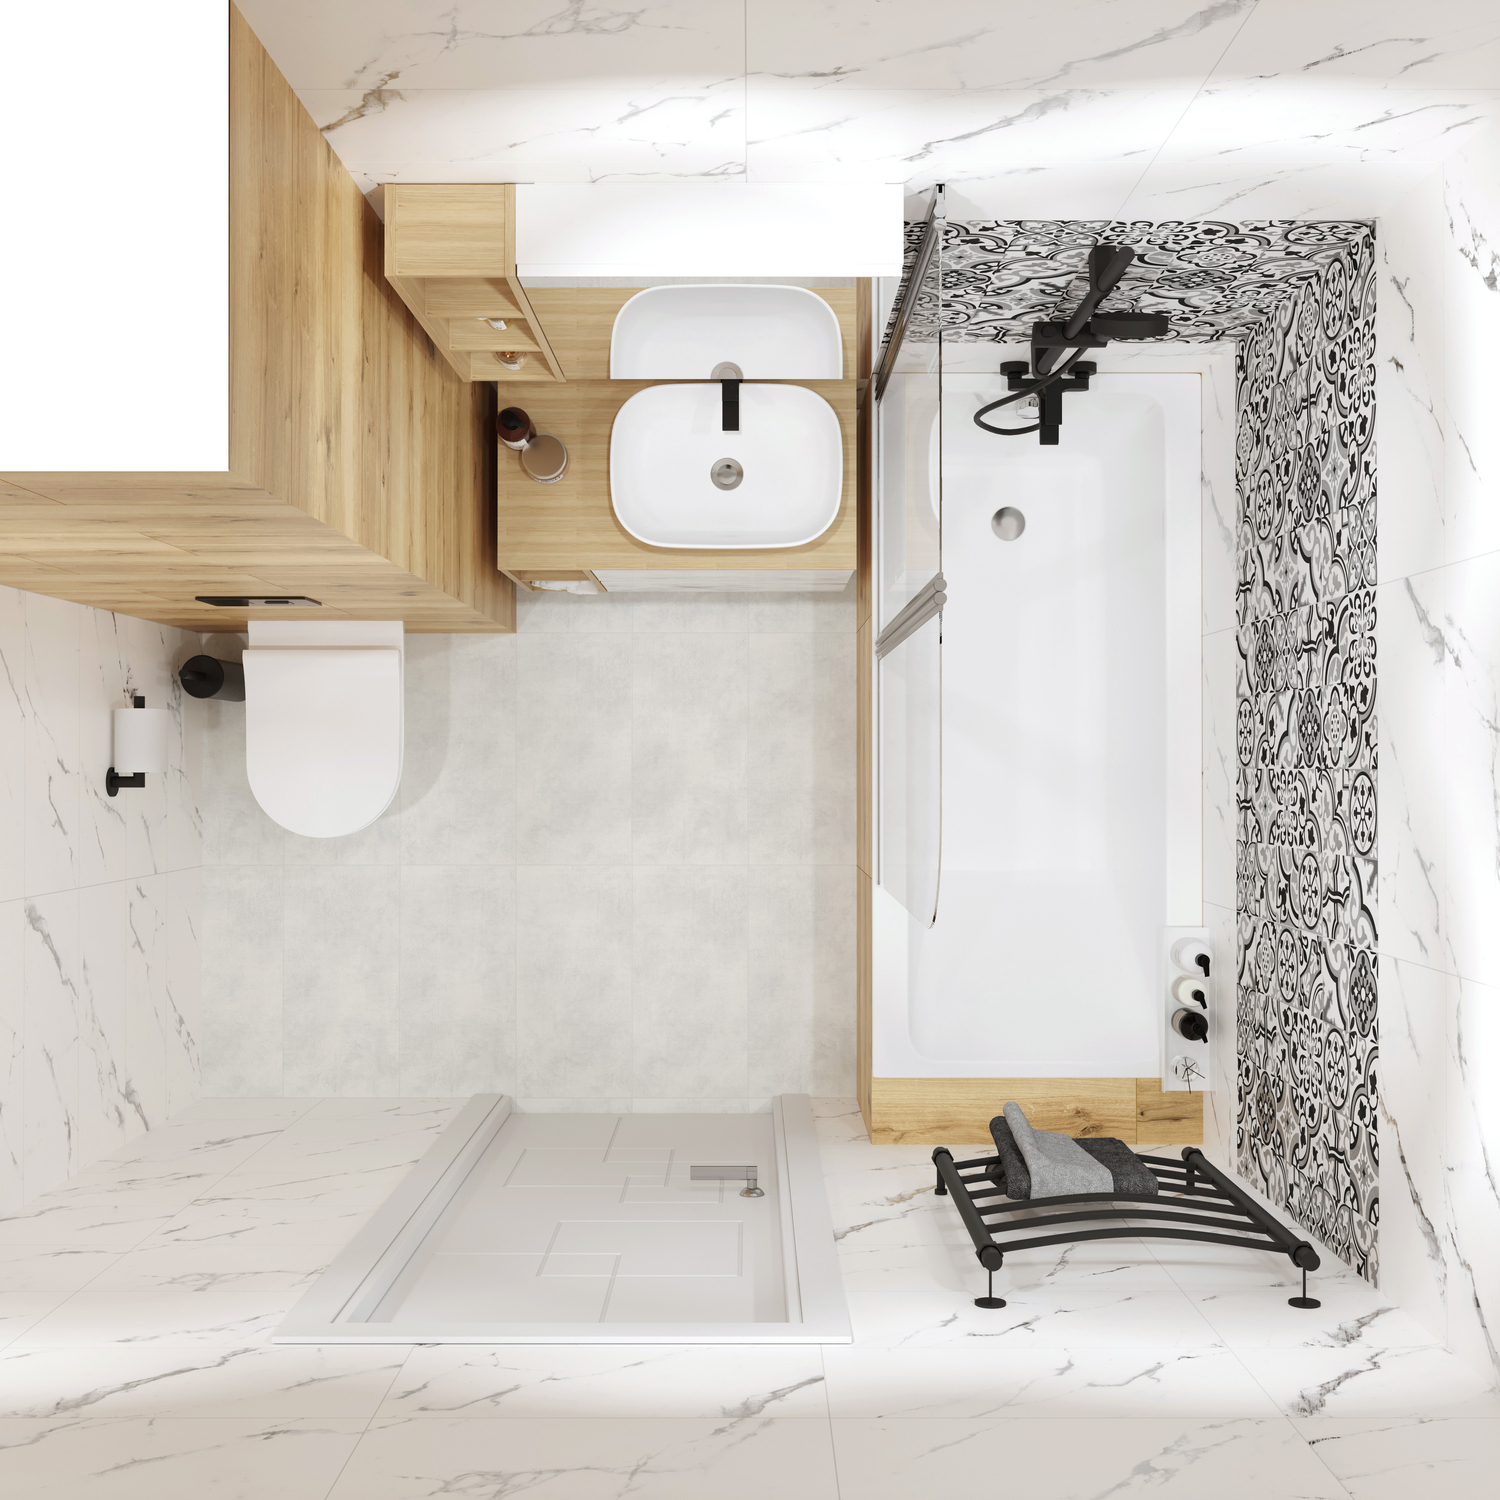 Дизайн ванной комнаты 1.5 на 1.7: создаем красивое и функциональное пространство